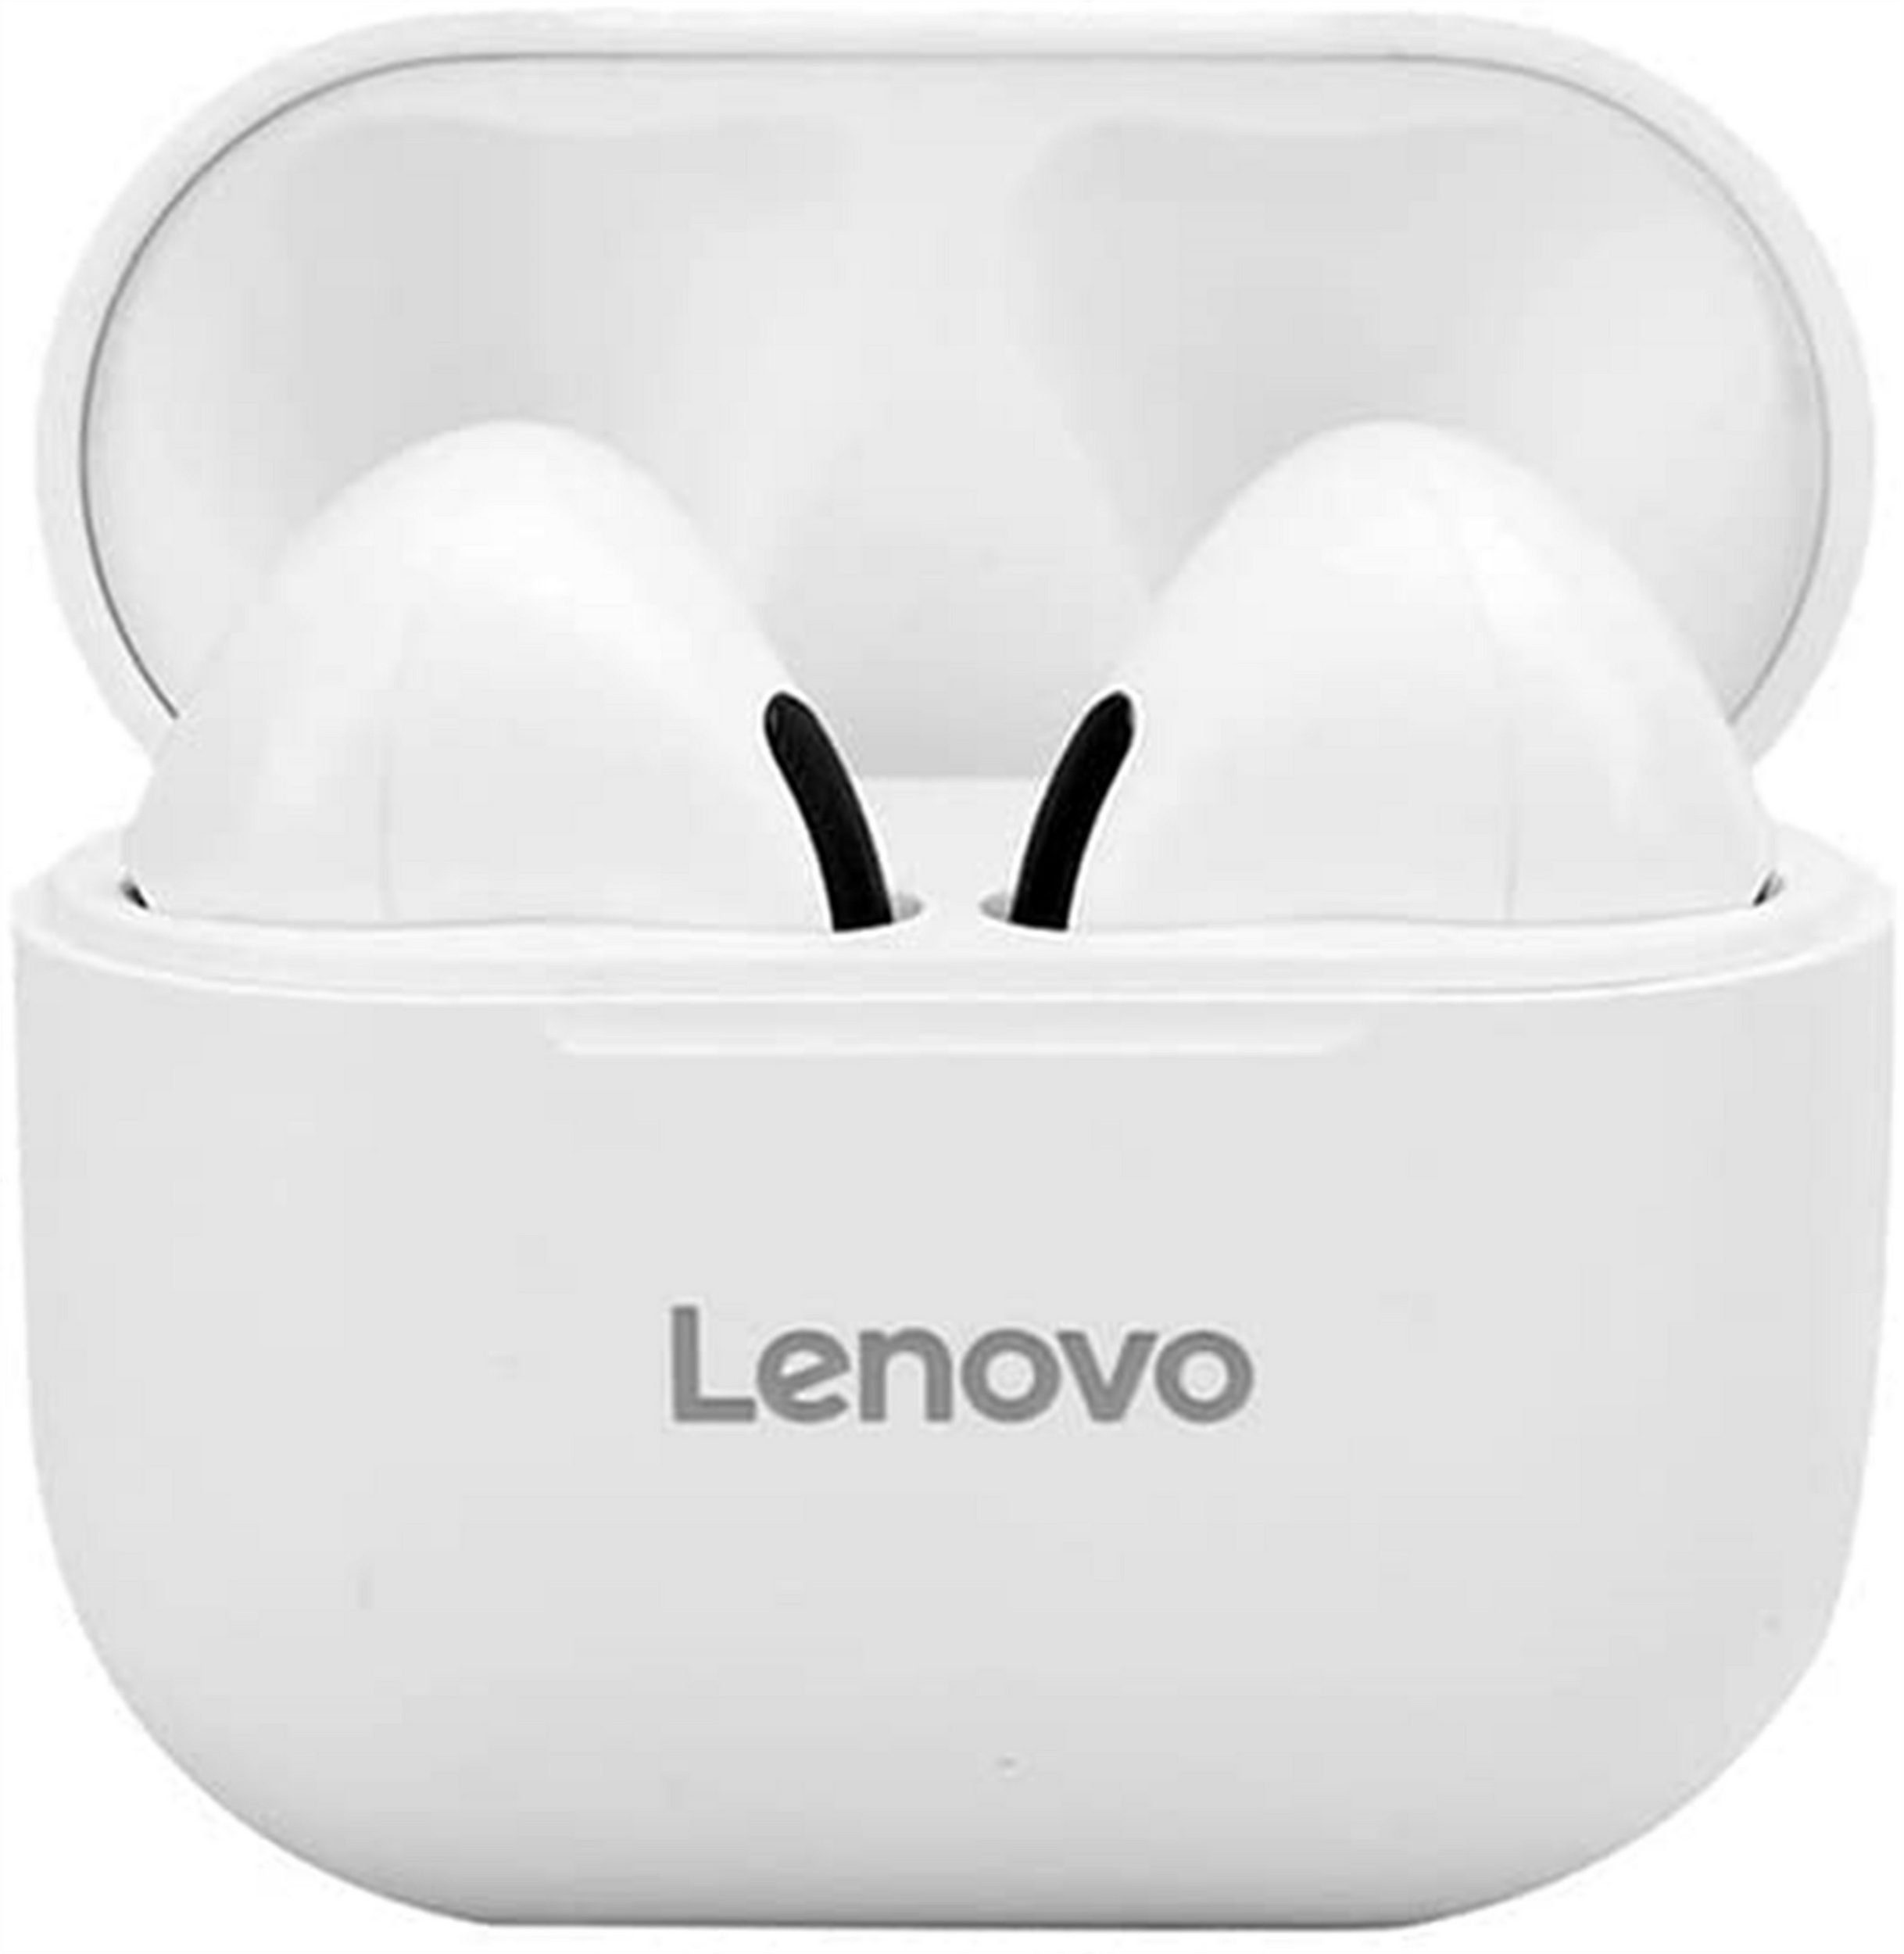 Lenovo LP40 mit Touch-Steuerung Bluetooth-Kopfhörer (True Wireless, Bluetooth 5.0, kabellos, Stereo-Ohrhörer mit 300 mAh Kopfhörer-Ladehülle - Weiß)